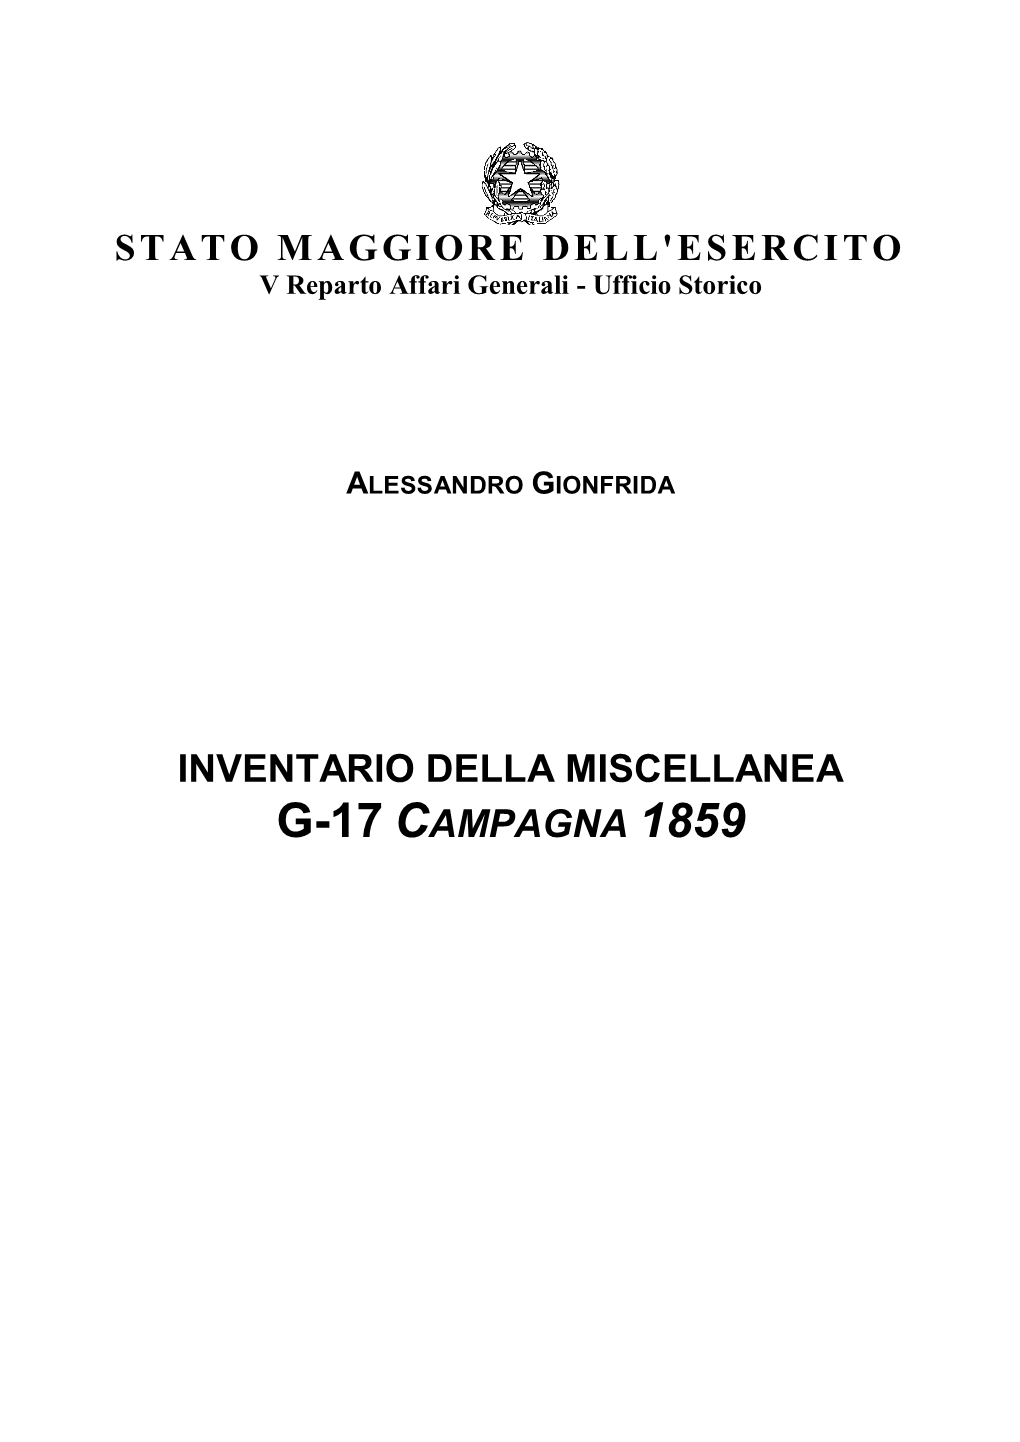 G-17 Inventario Della Miscellanea Campagna 1859